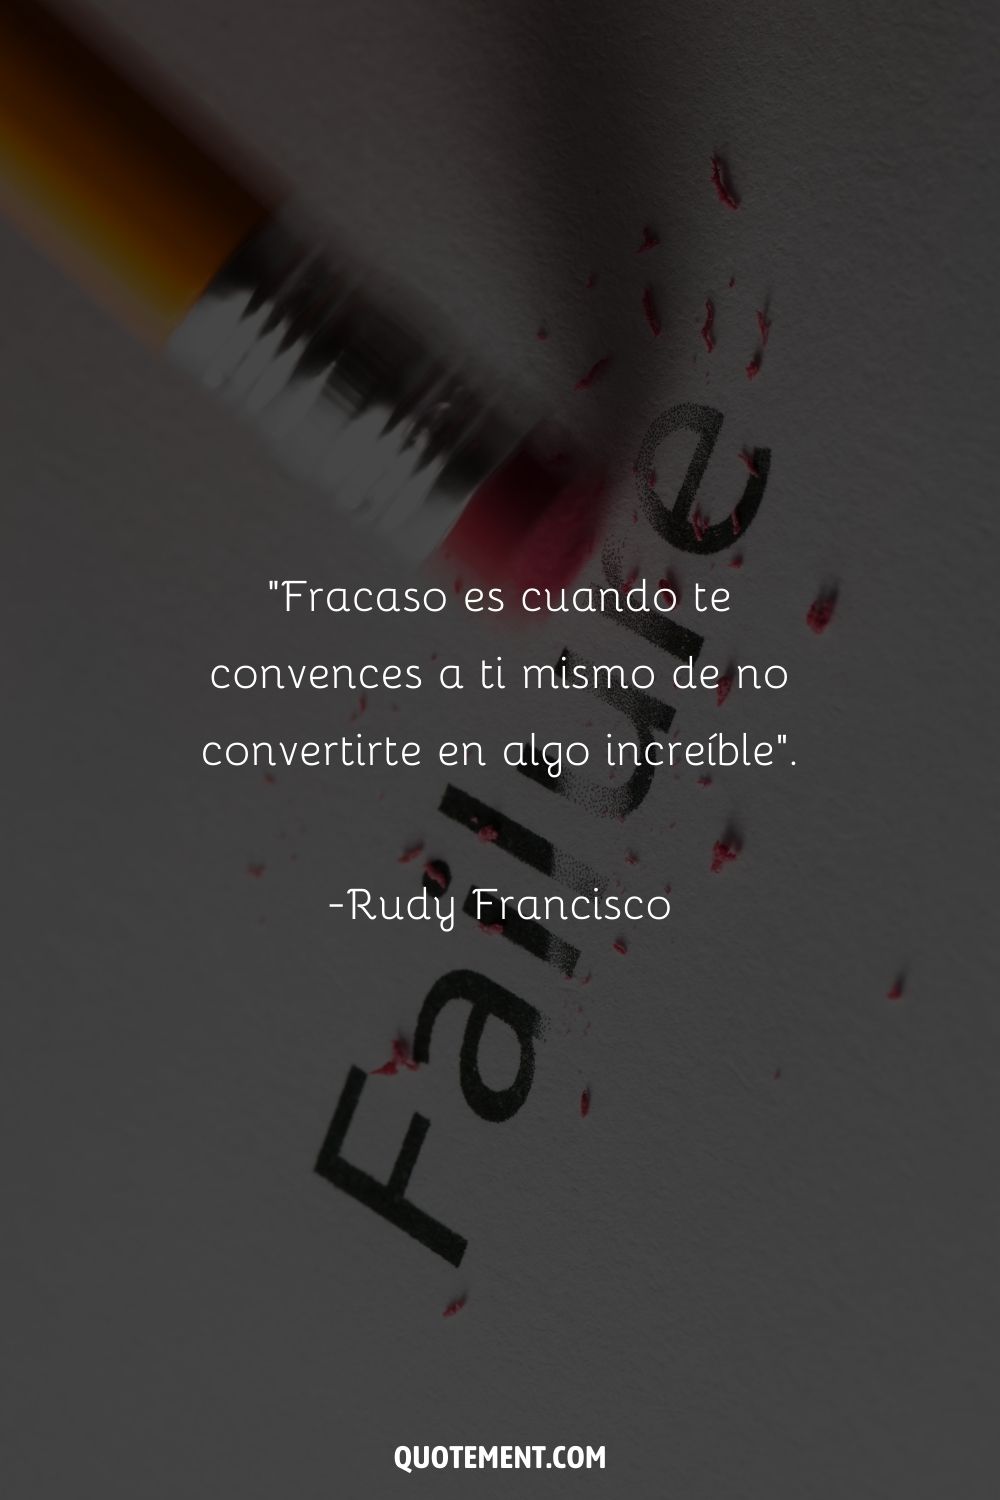 "Fracaso es cuando te convences a ti mismo de no convertirte en algo increíble". - Rudy Francisco